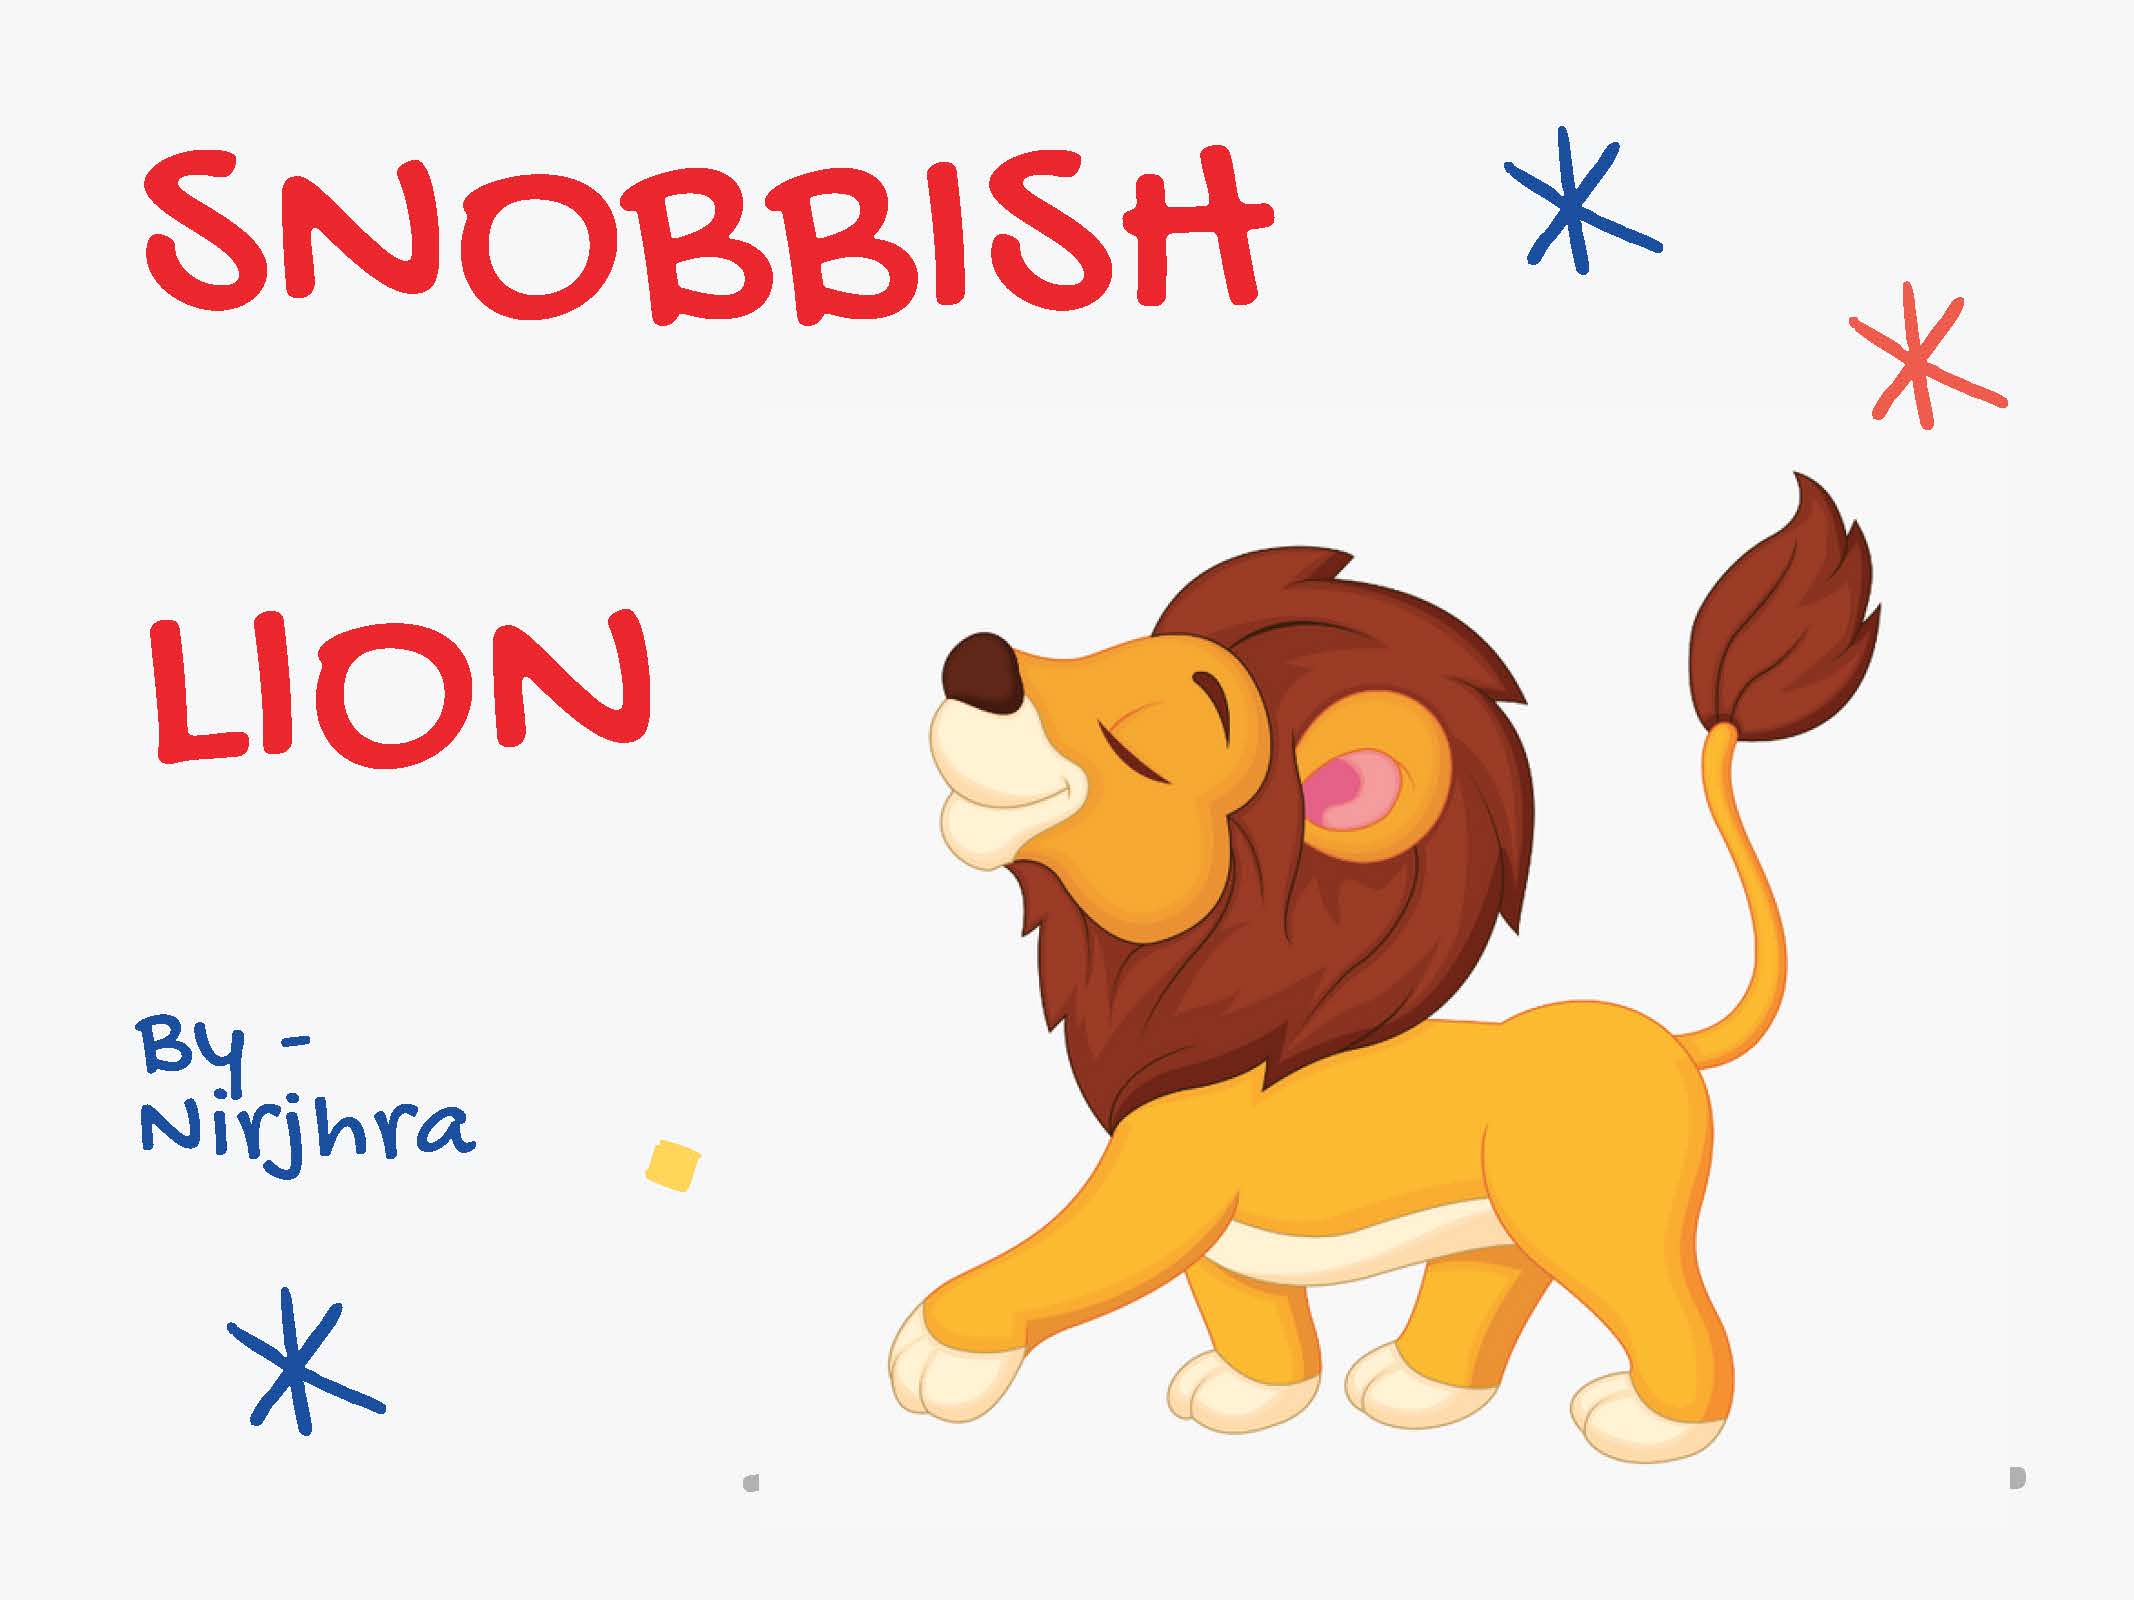 Snobbish Lion